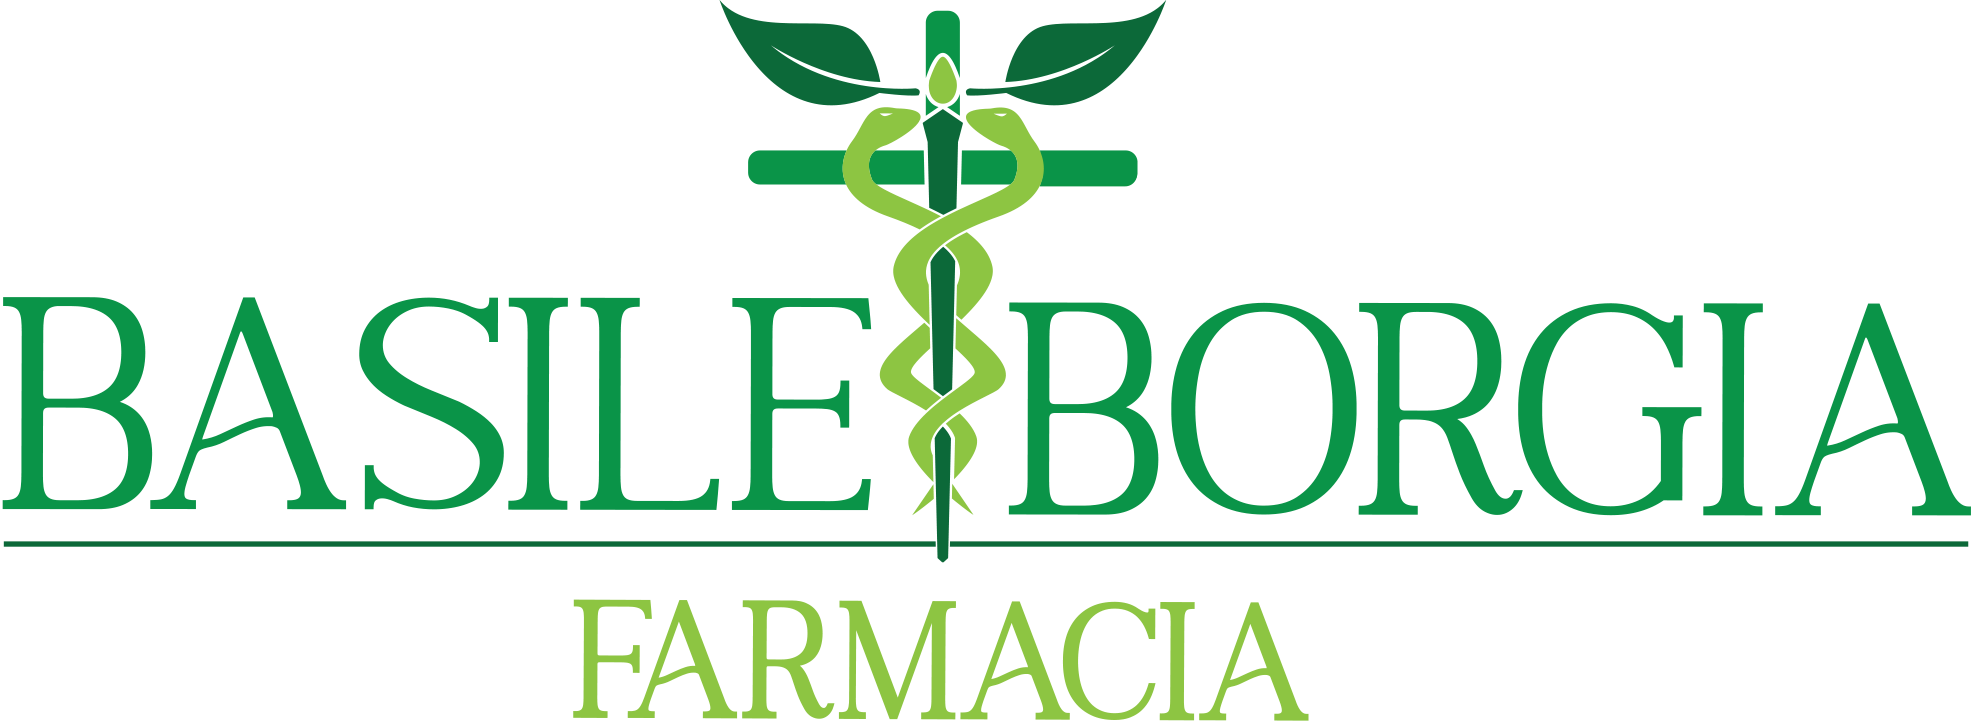 Farmacia Basile Borgia